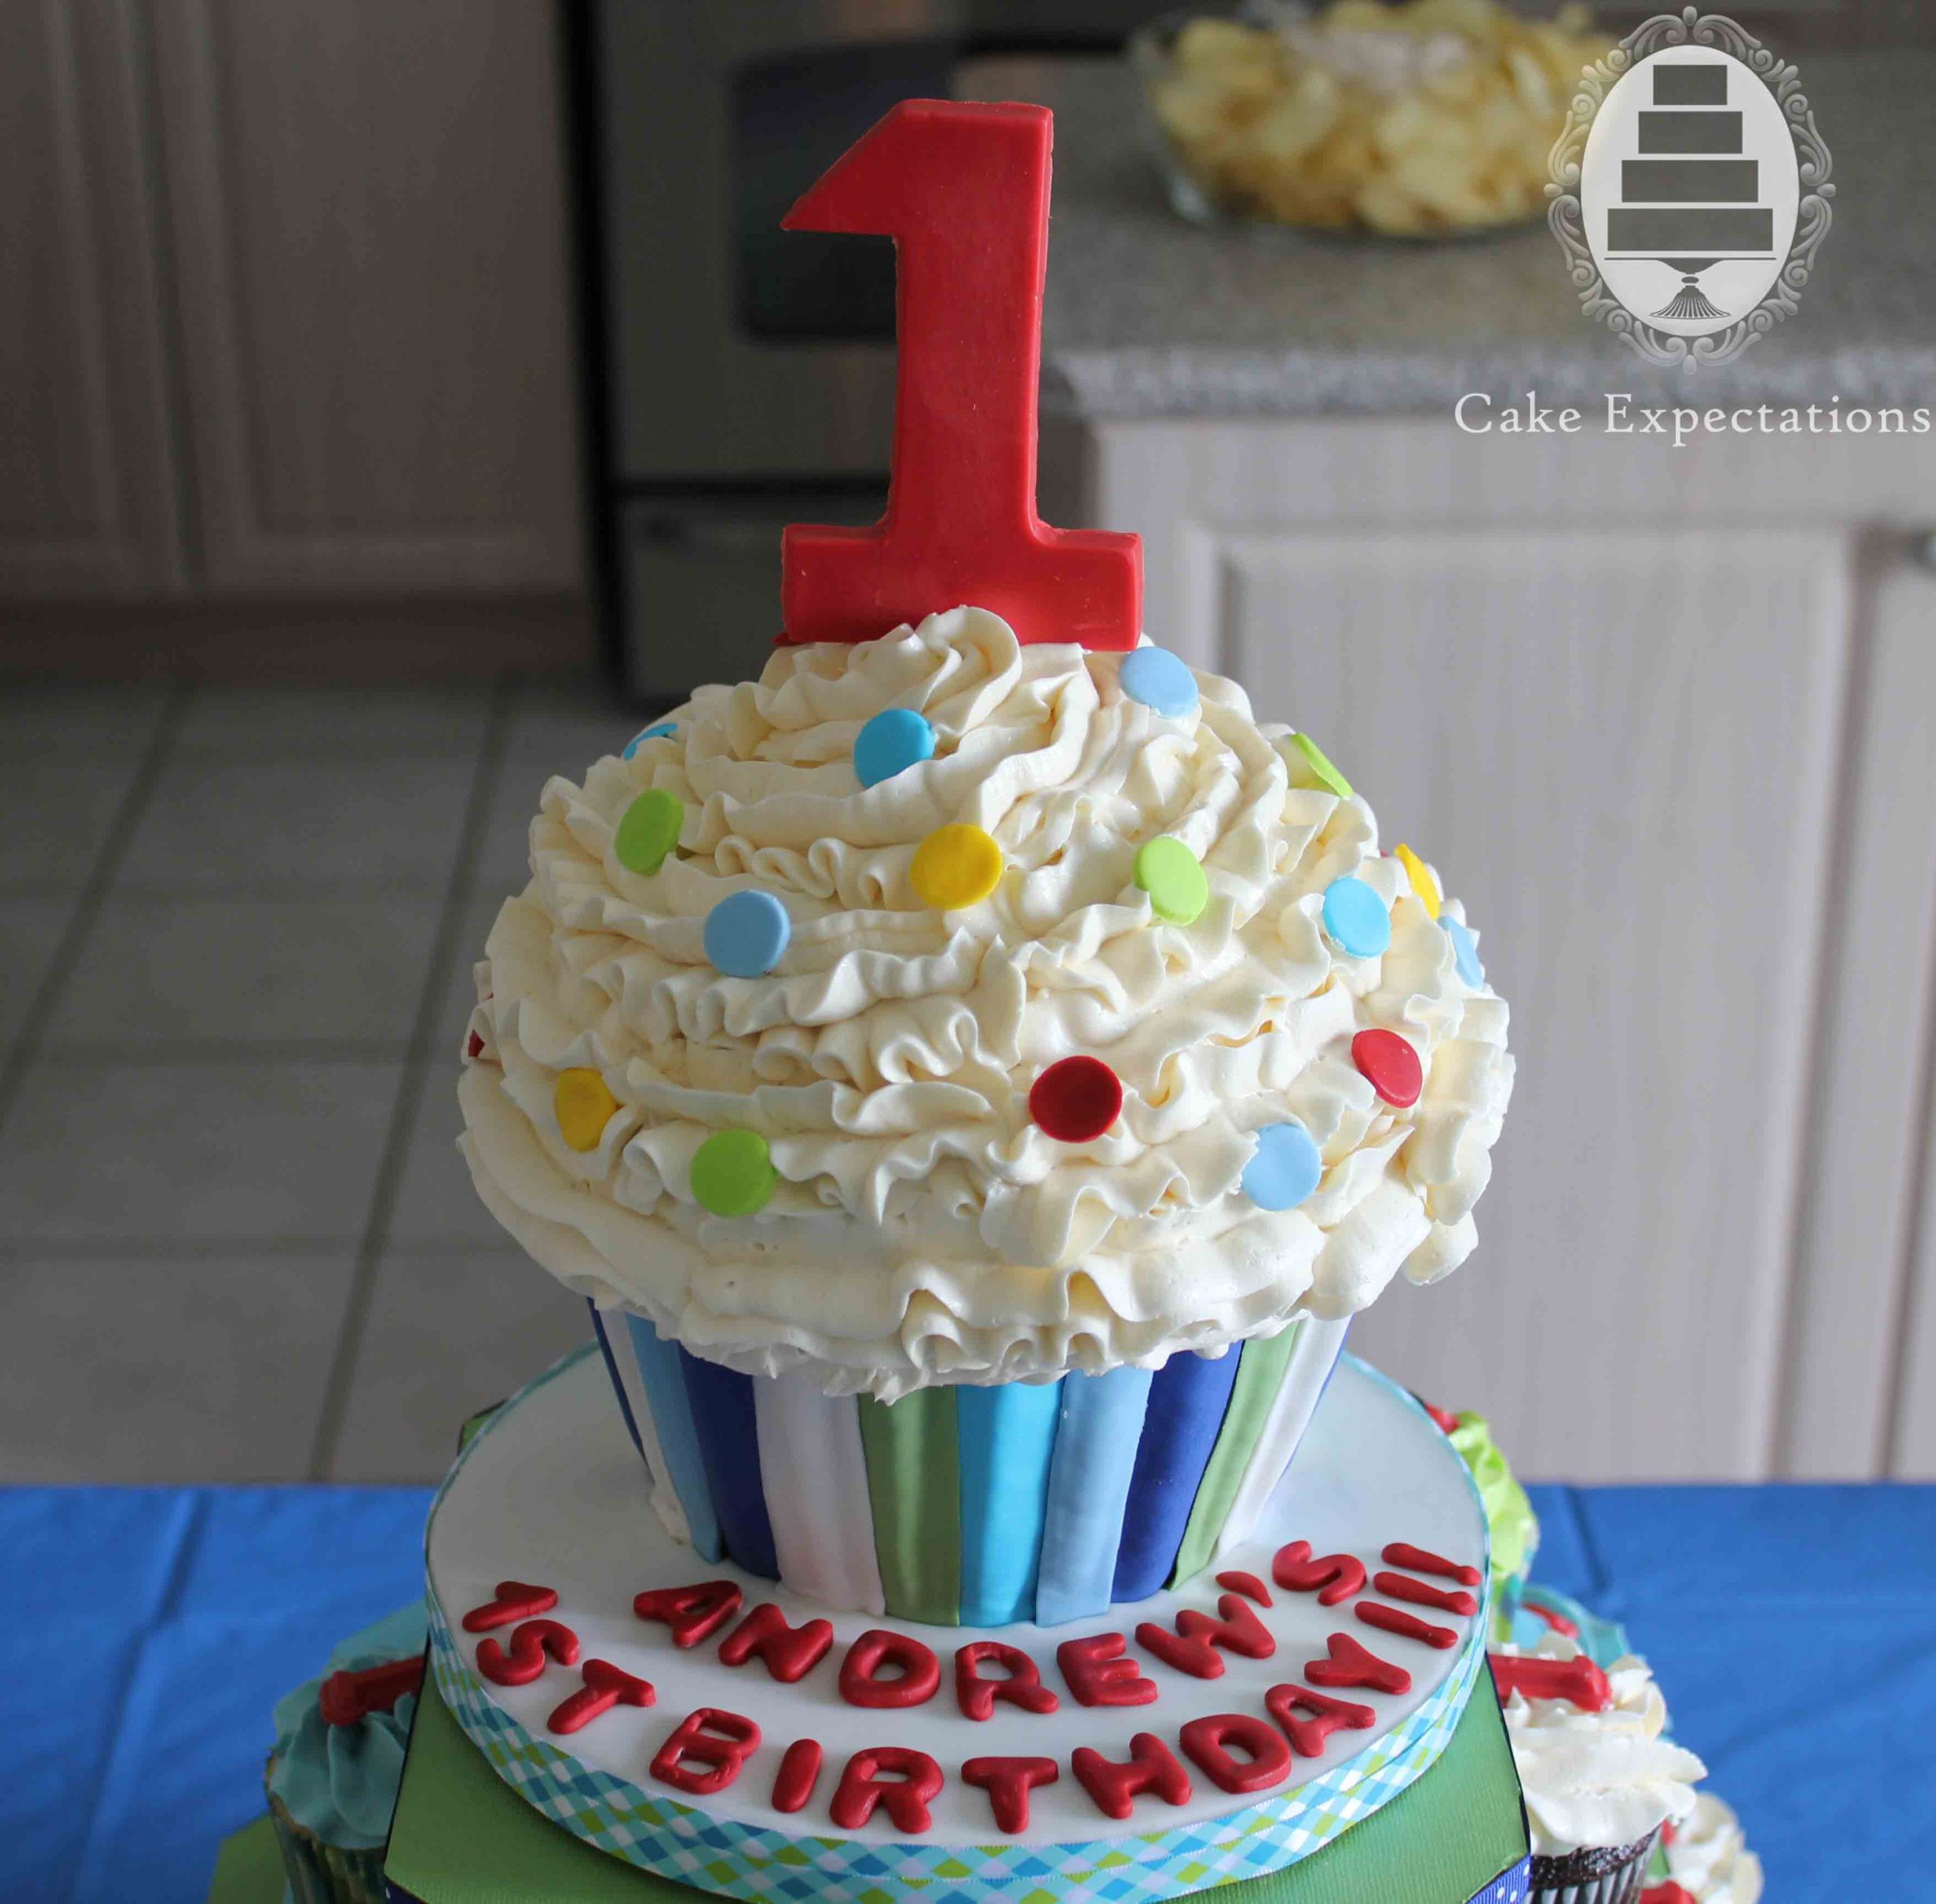 Cupcake Birthday Cake
 Cake Expectations – Cupcakes